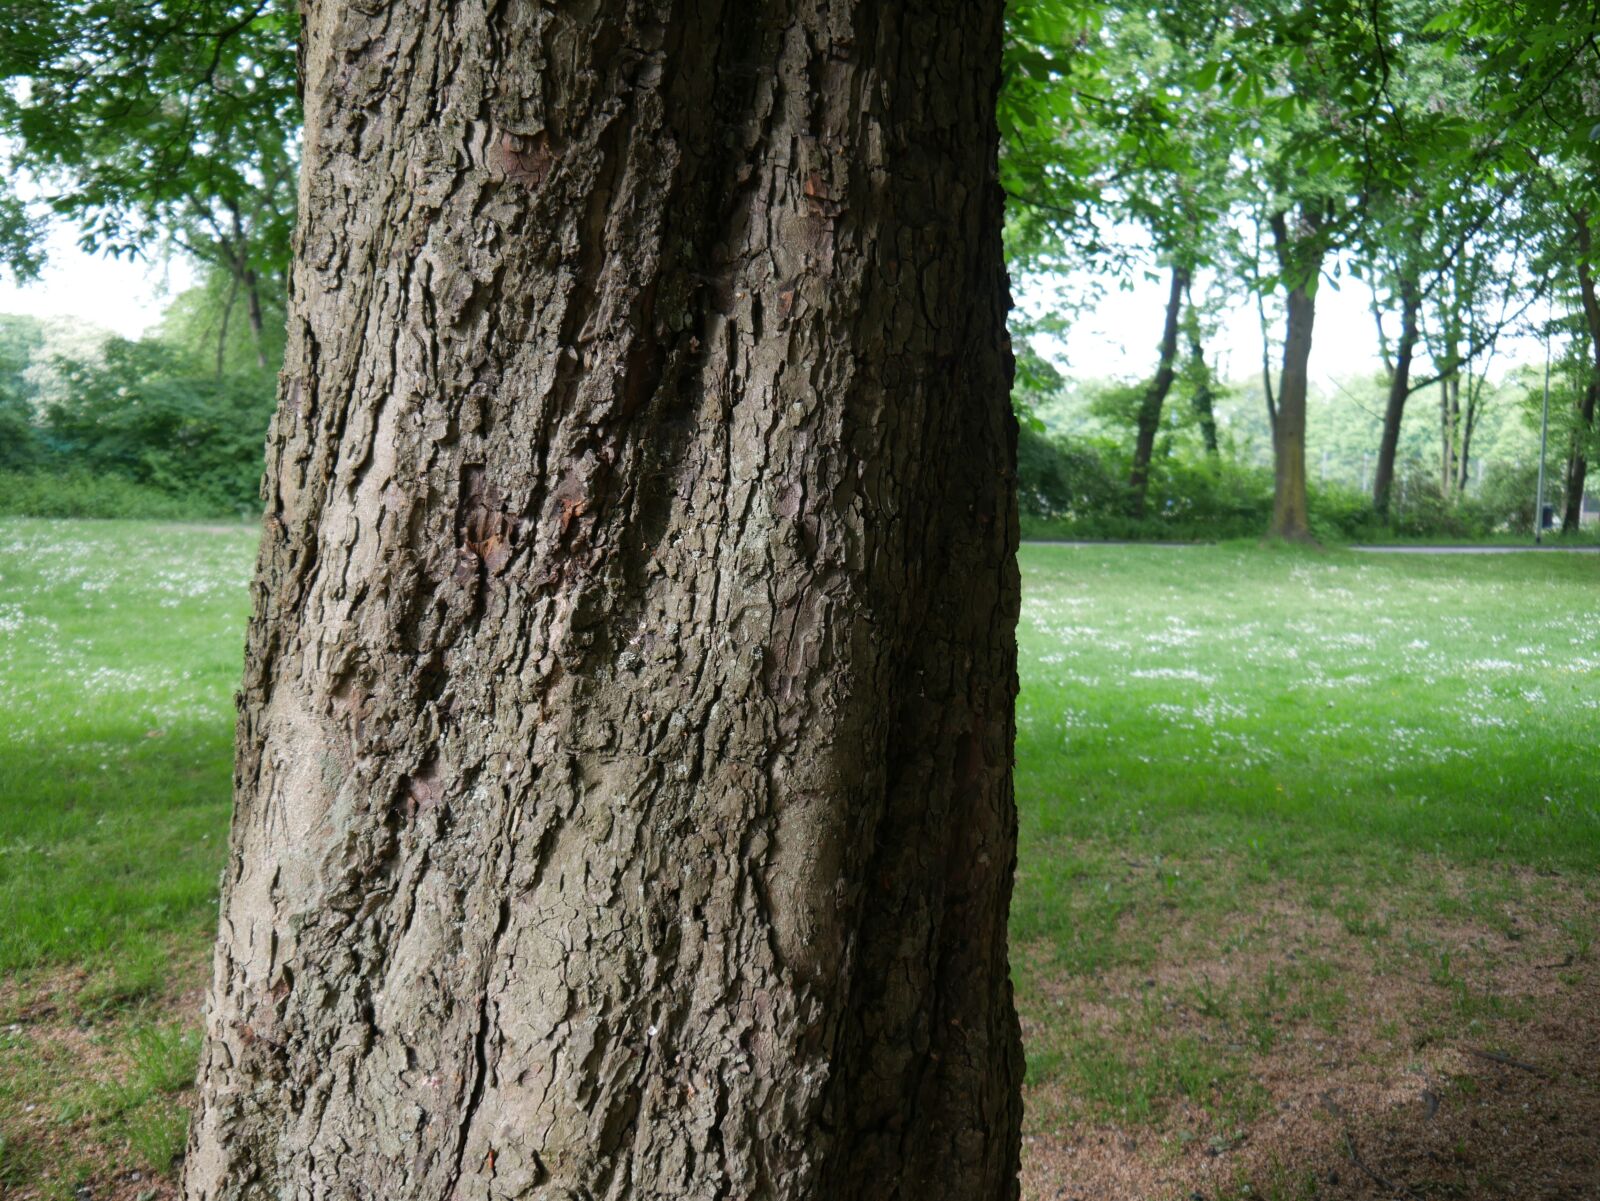 Panasonic DMC-G70 sample photo. Baum, tree, nature photography